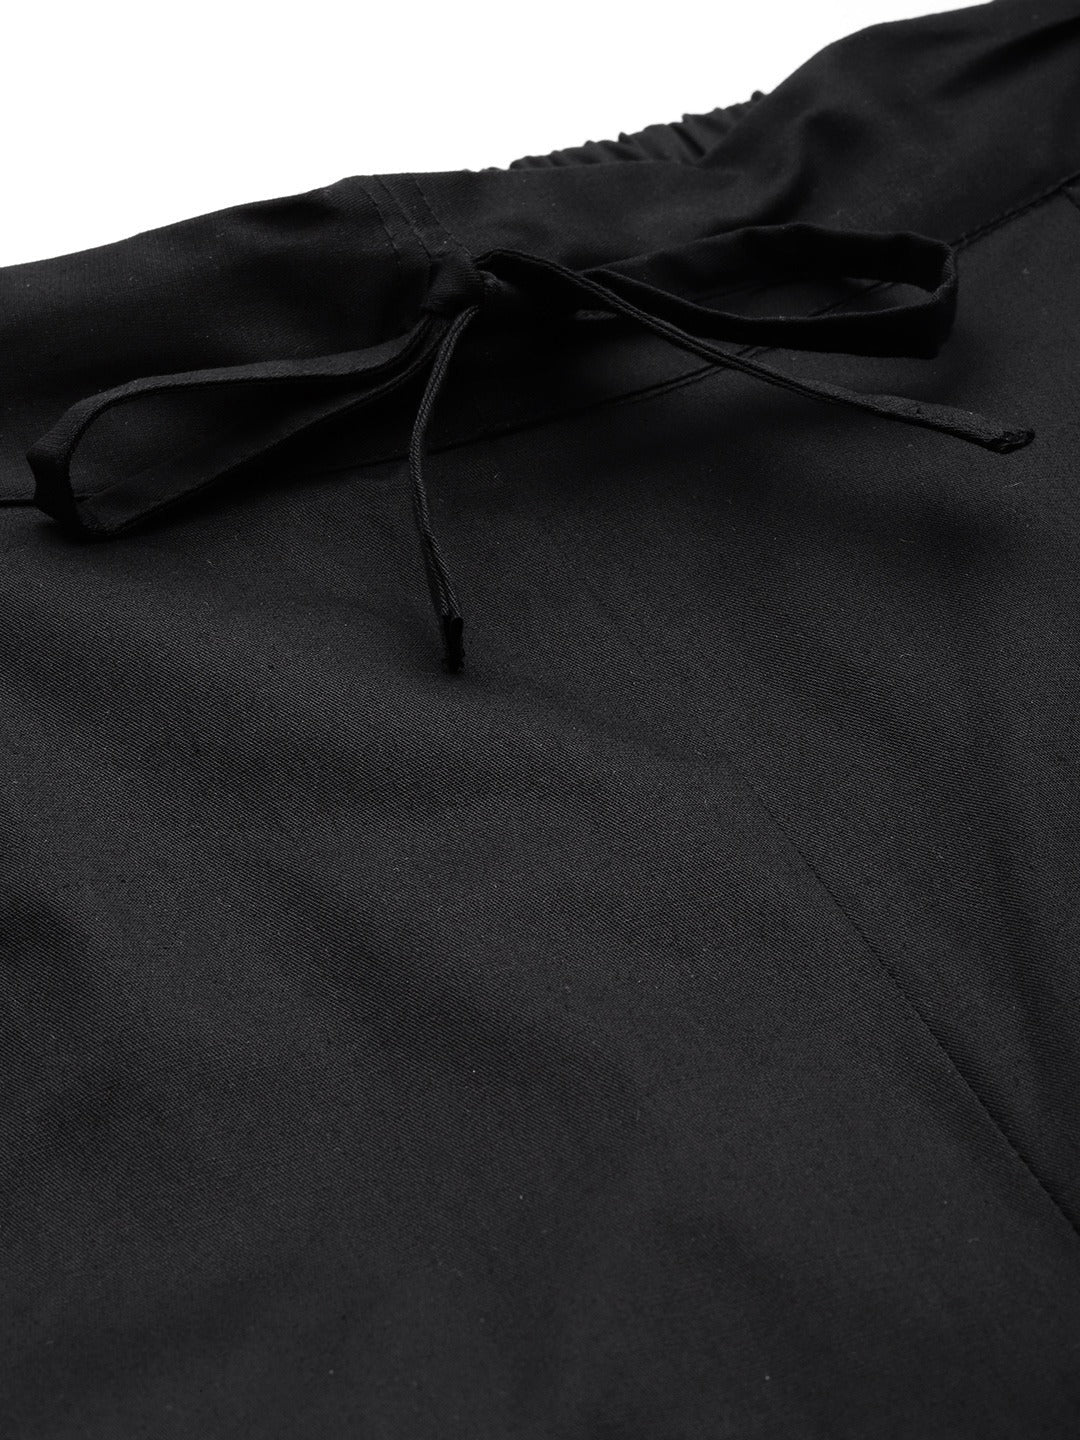 Cotton Lycra Fabric Black Color Trouser